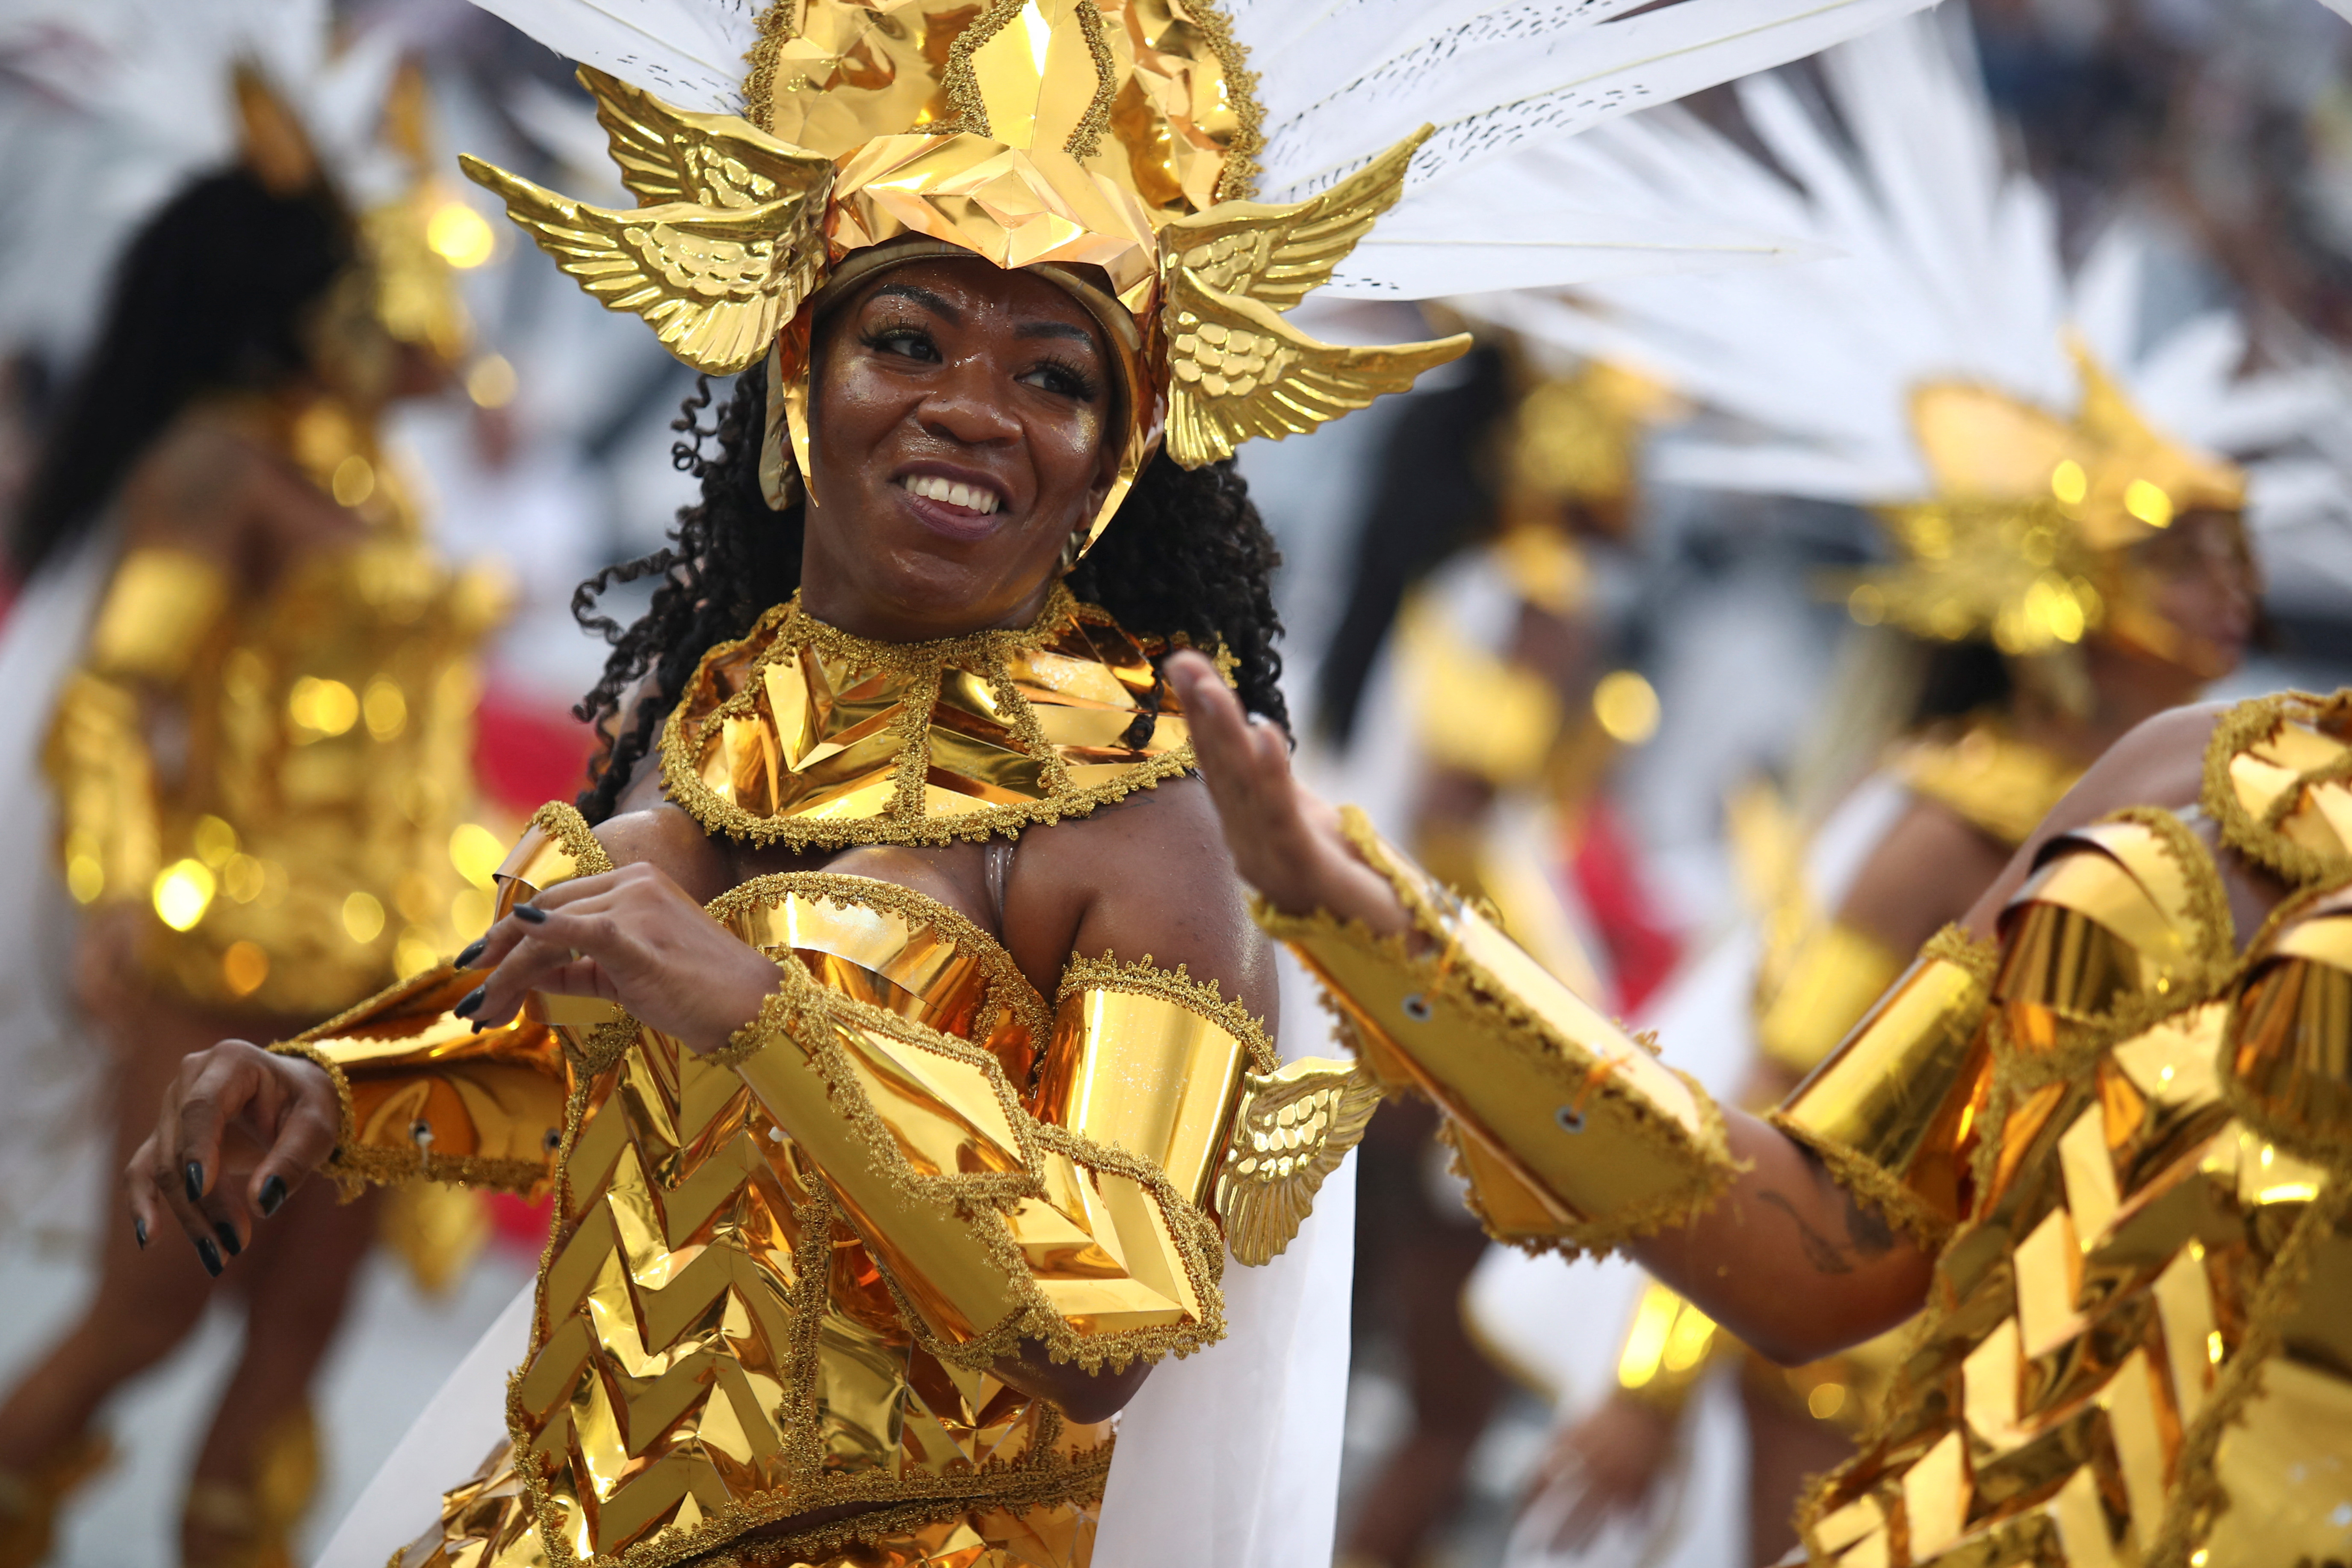 Juerguistas de la escuela Gavioes da Fiel actúan durante la primera noche del desfile de Carnaval en el Sambódromo de Anhembi en Sao Paulo, Brasil 18 de febrero de 2023. REUTERS/Carla Carniel